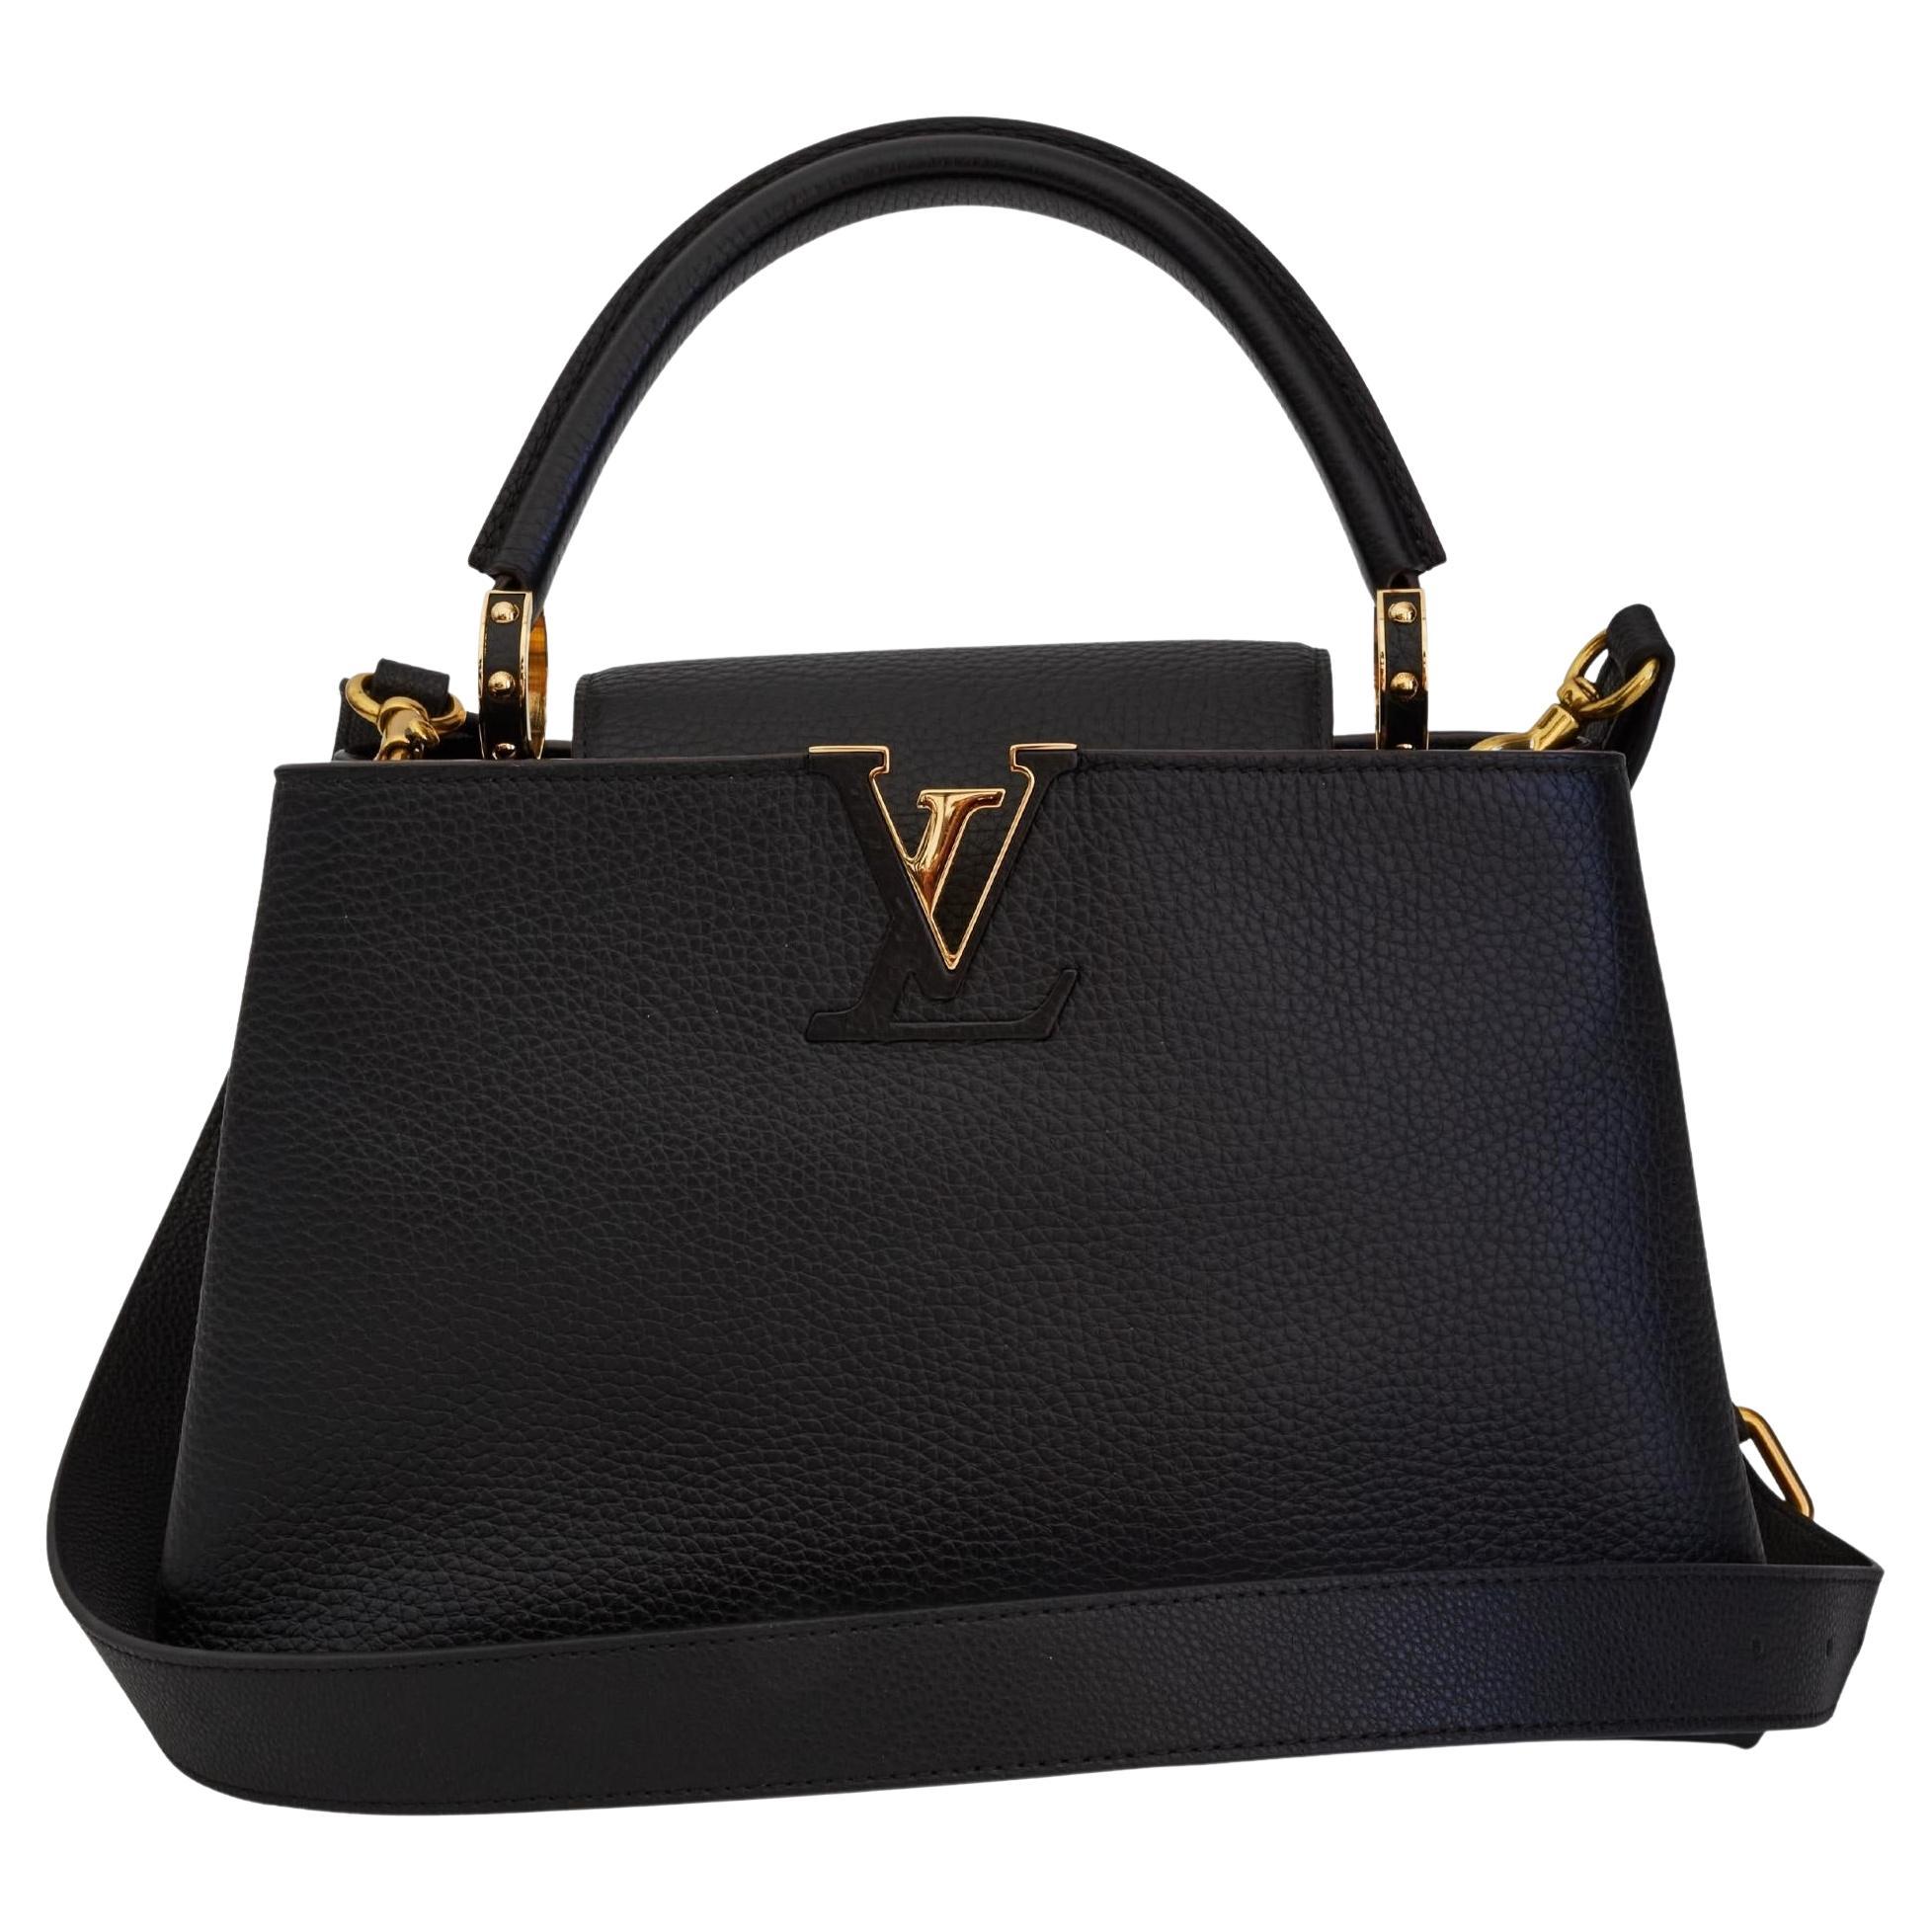 Louis Vuitton Black Taurillon Capucines PM Shoulder Bag PM at